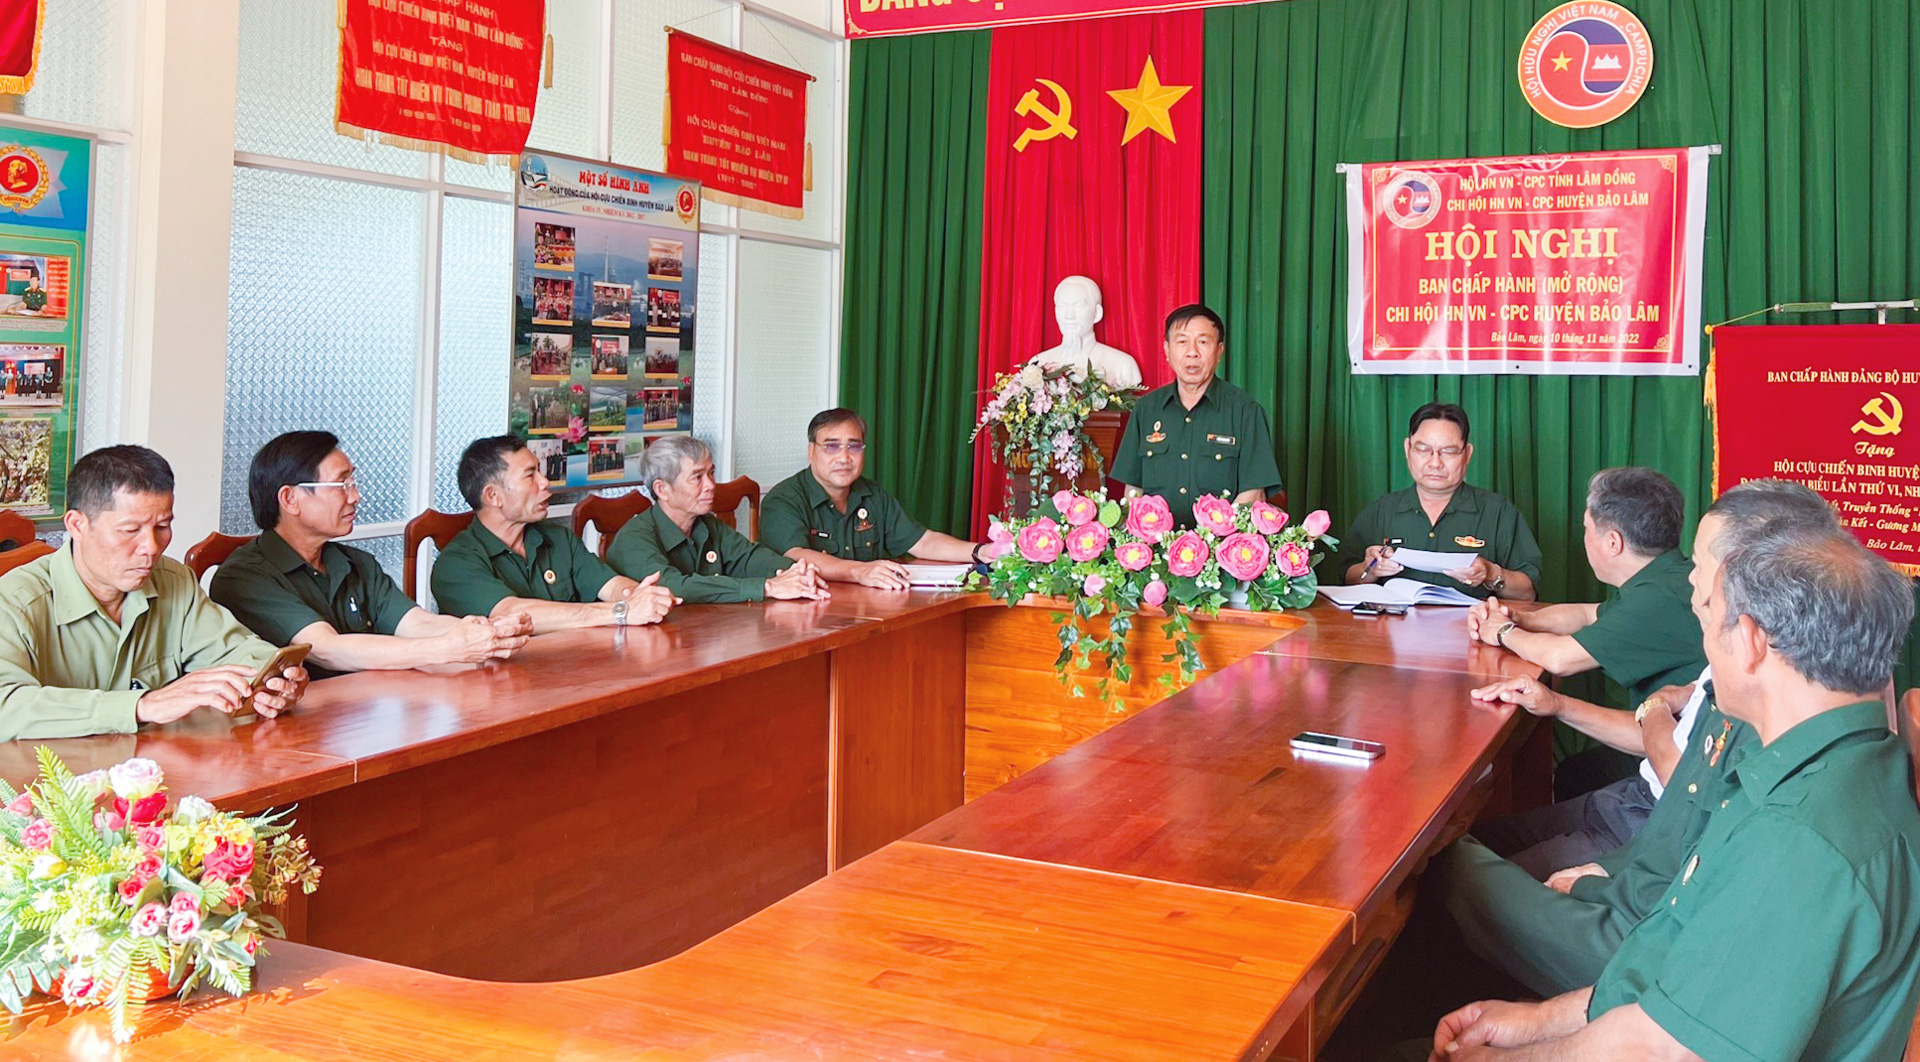 Chi hội Hữu nghị VN-CPC huyện Bảo Lâm luôn nỗ lực xây dựng, phát triển hoạt động Chi hội